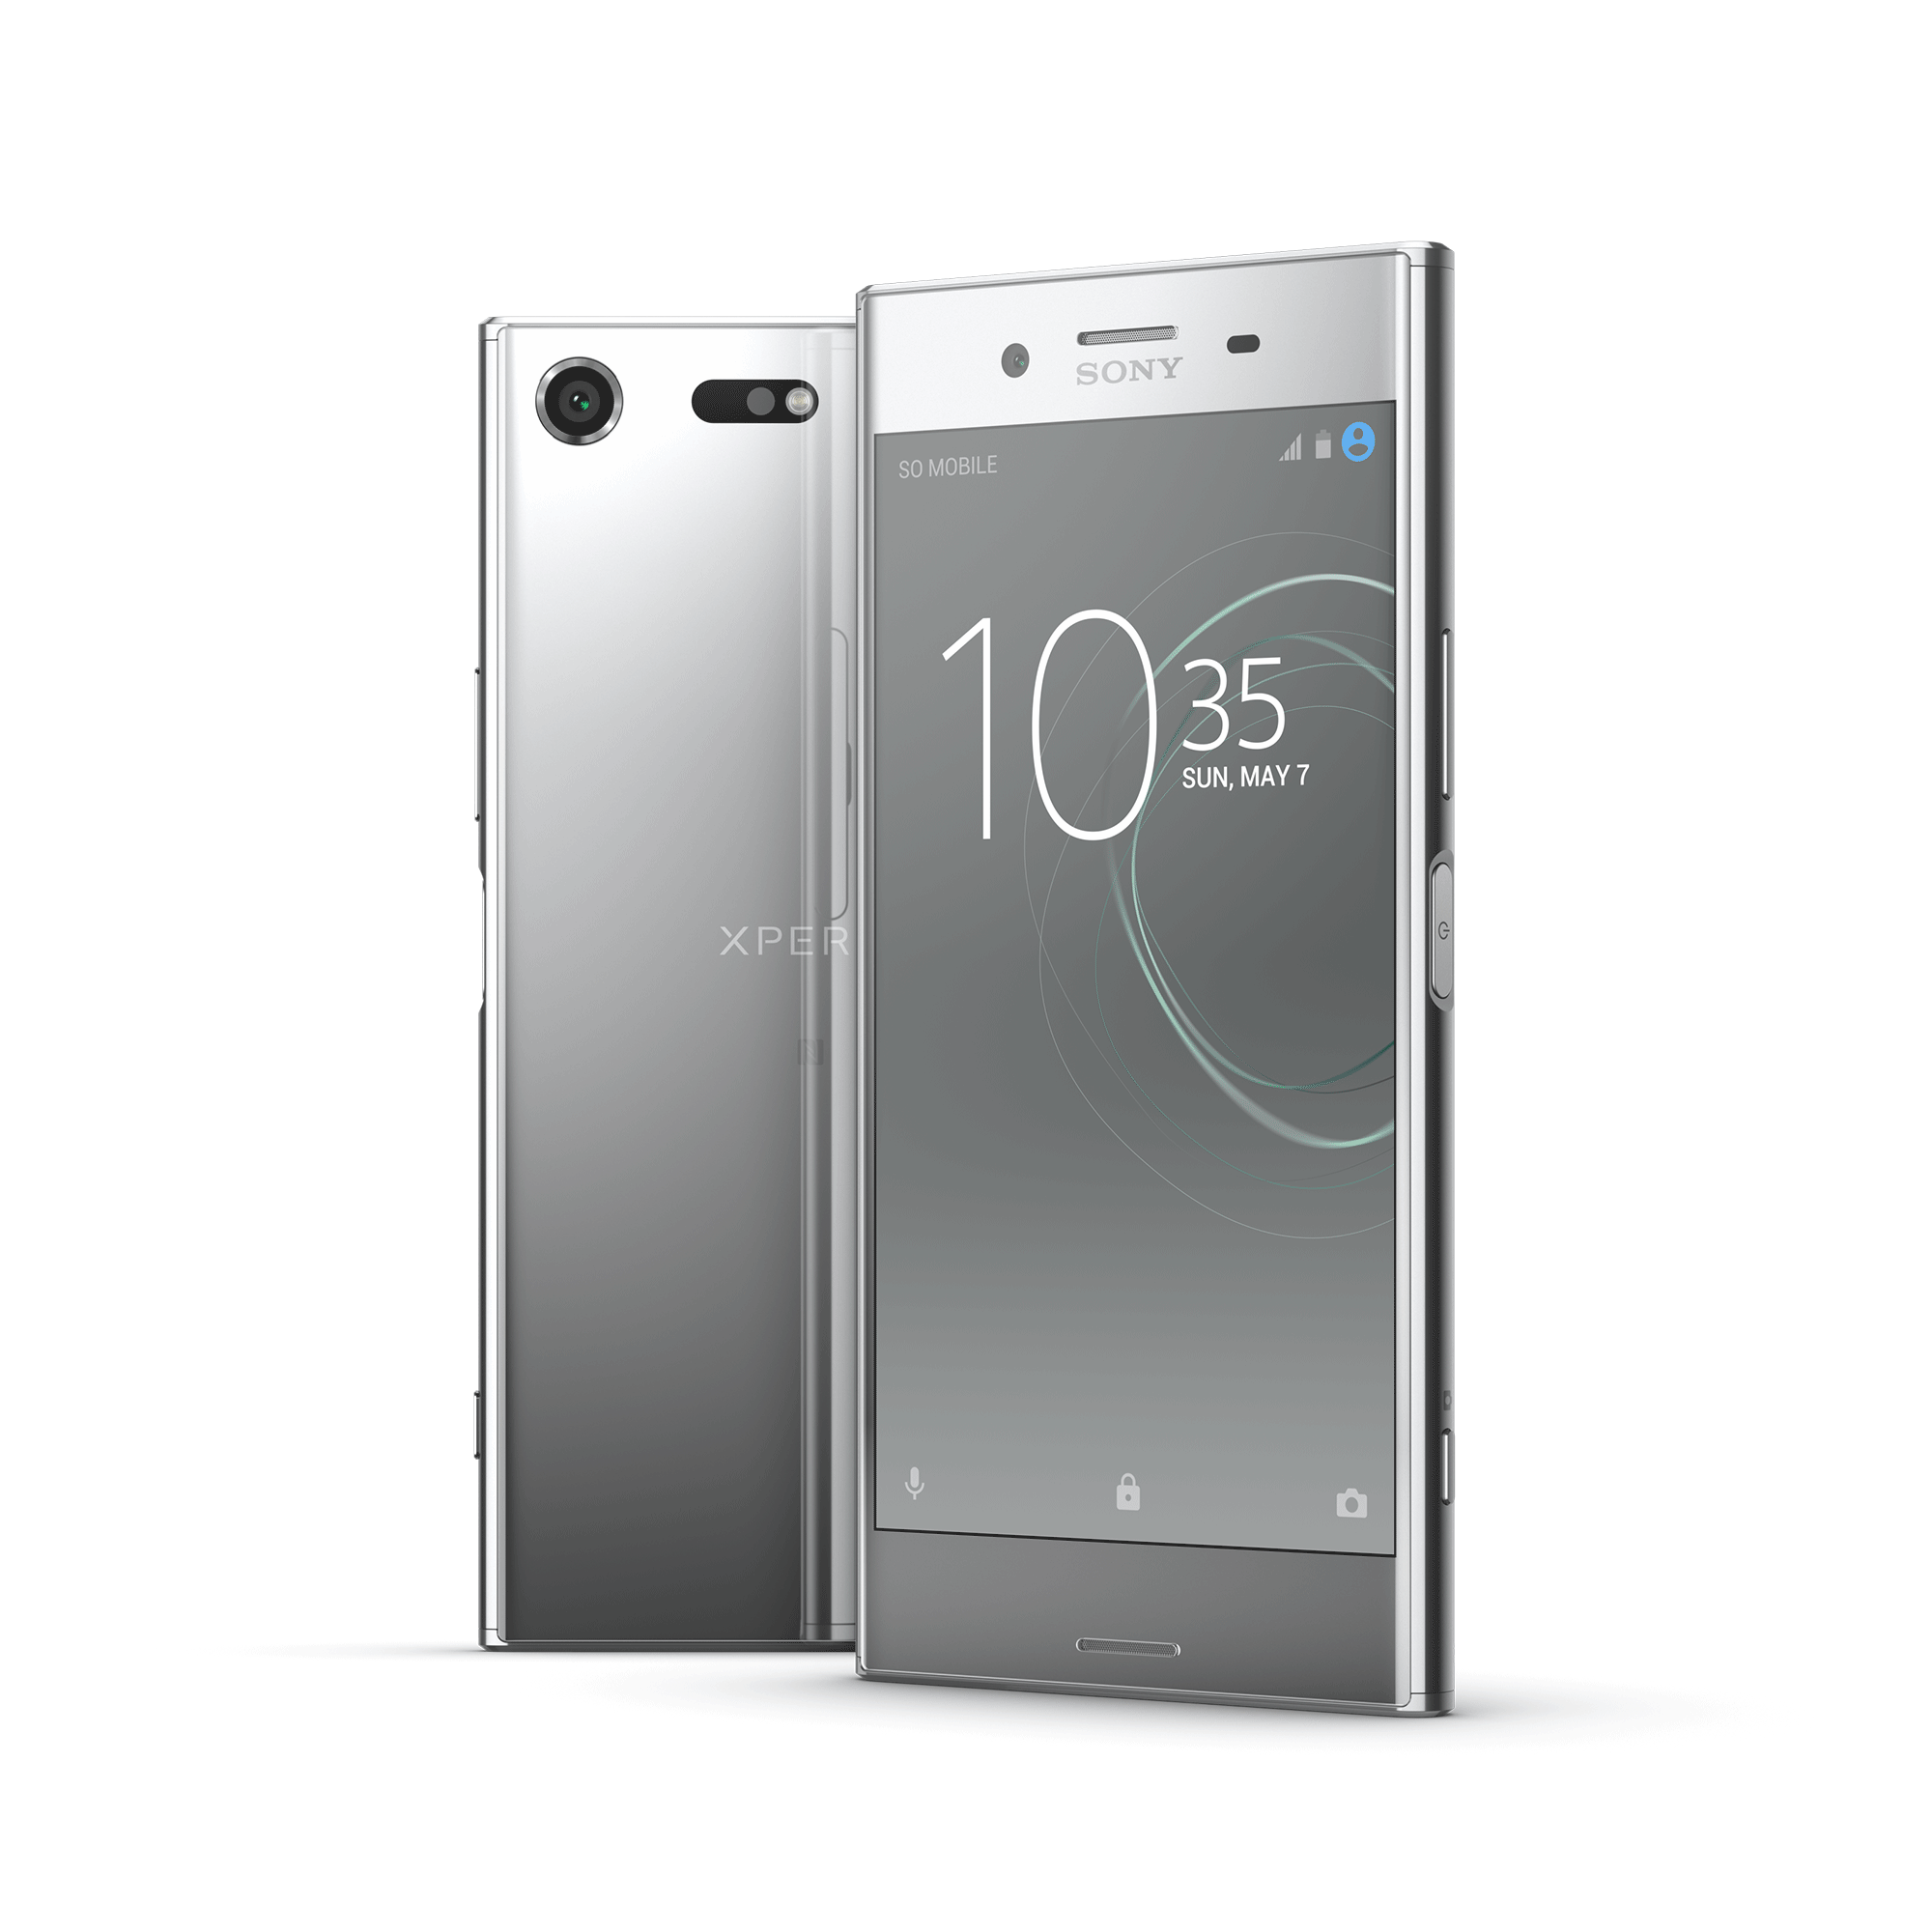 Sony Xperia XZ Premium स्मार्टफोन को एंड्रॉयड 9.0 पाई मिलने की खबर, जानिये